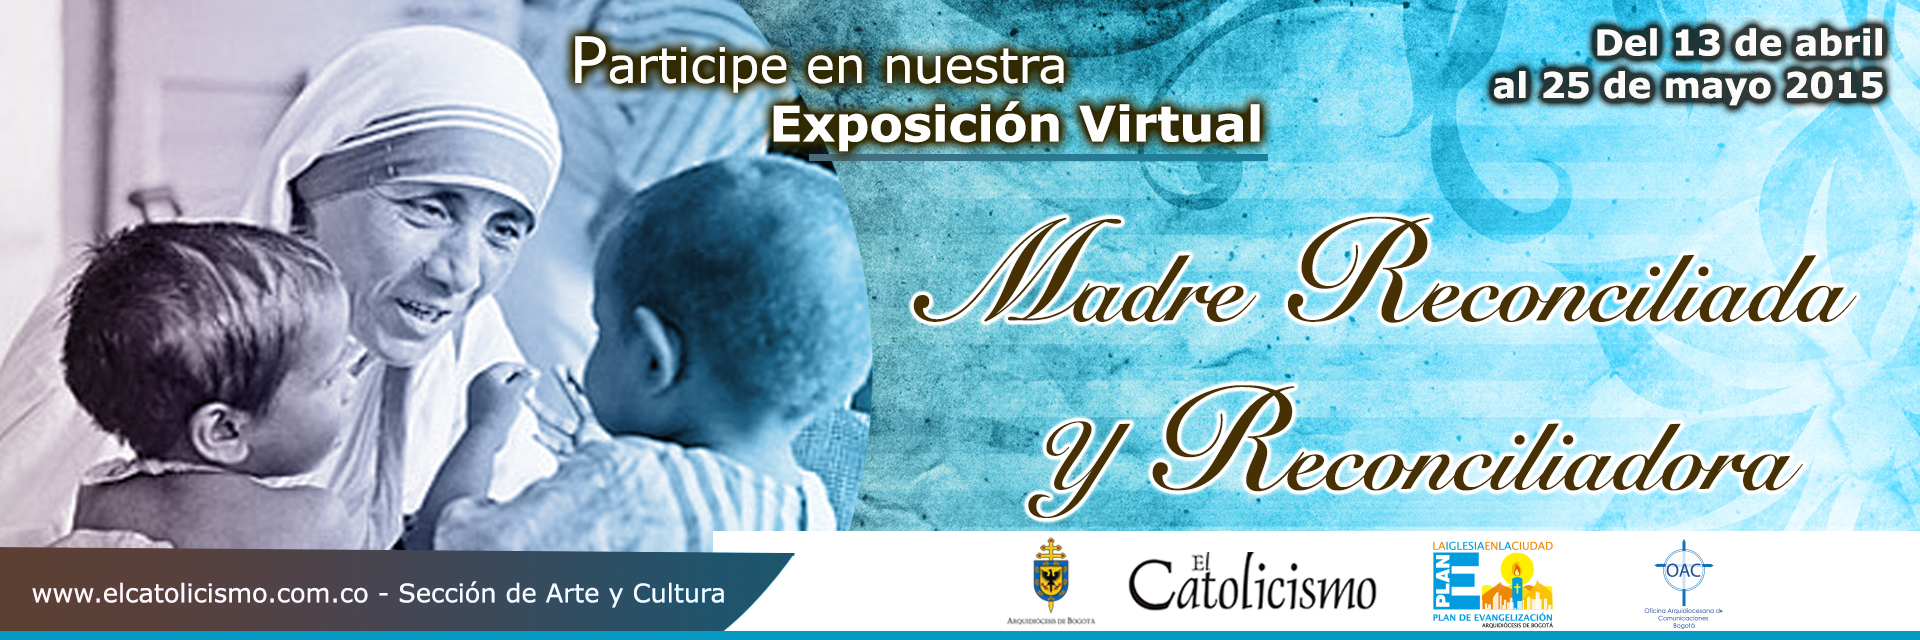 Convocatoria Exposición Virtual “Madre reconciliada y reconciliadora”